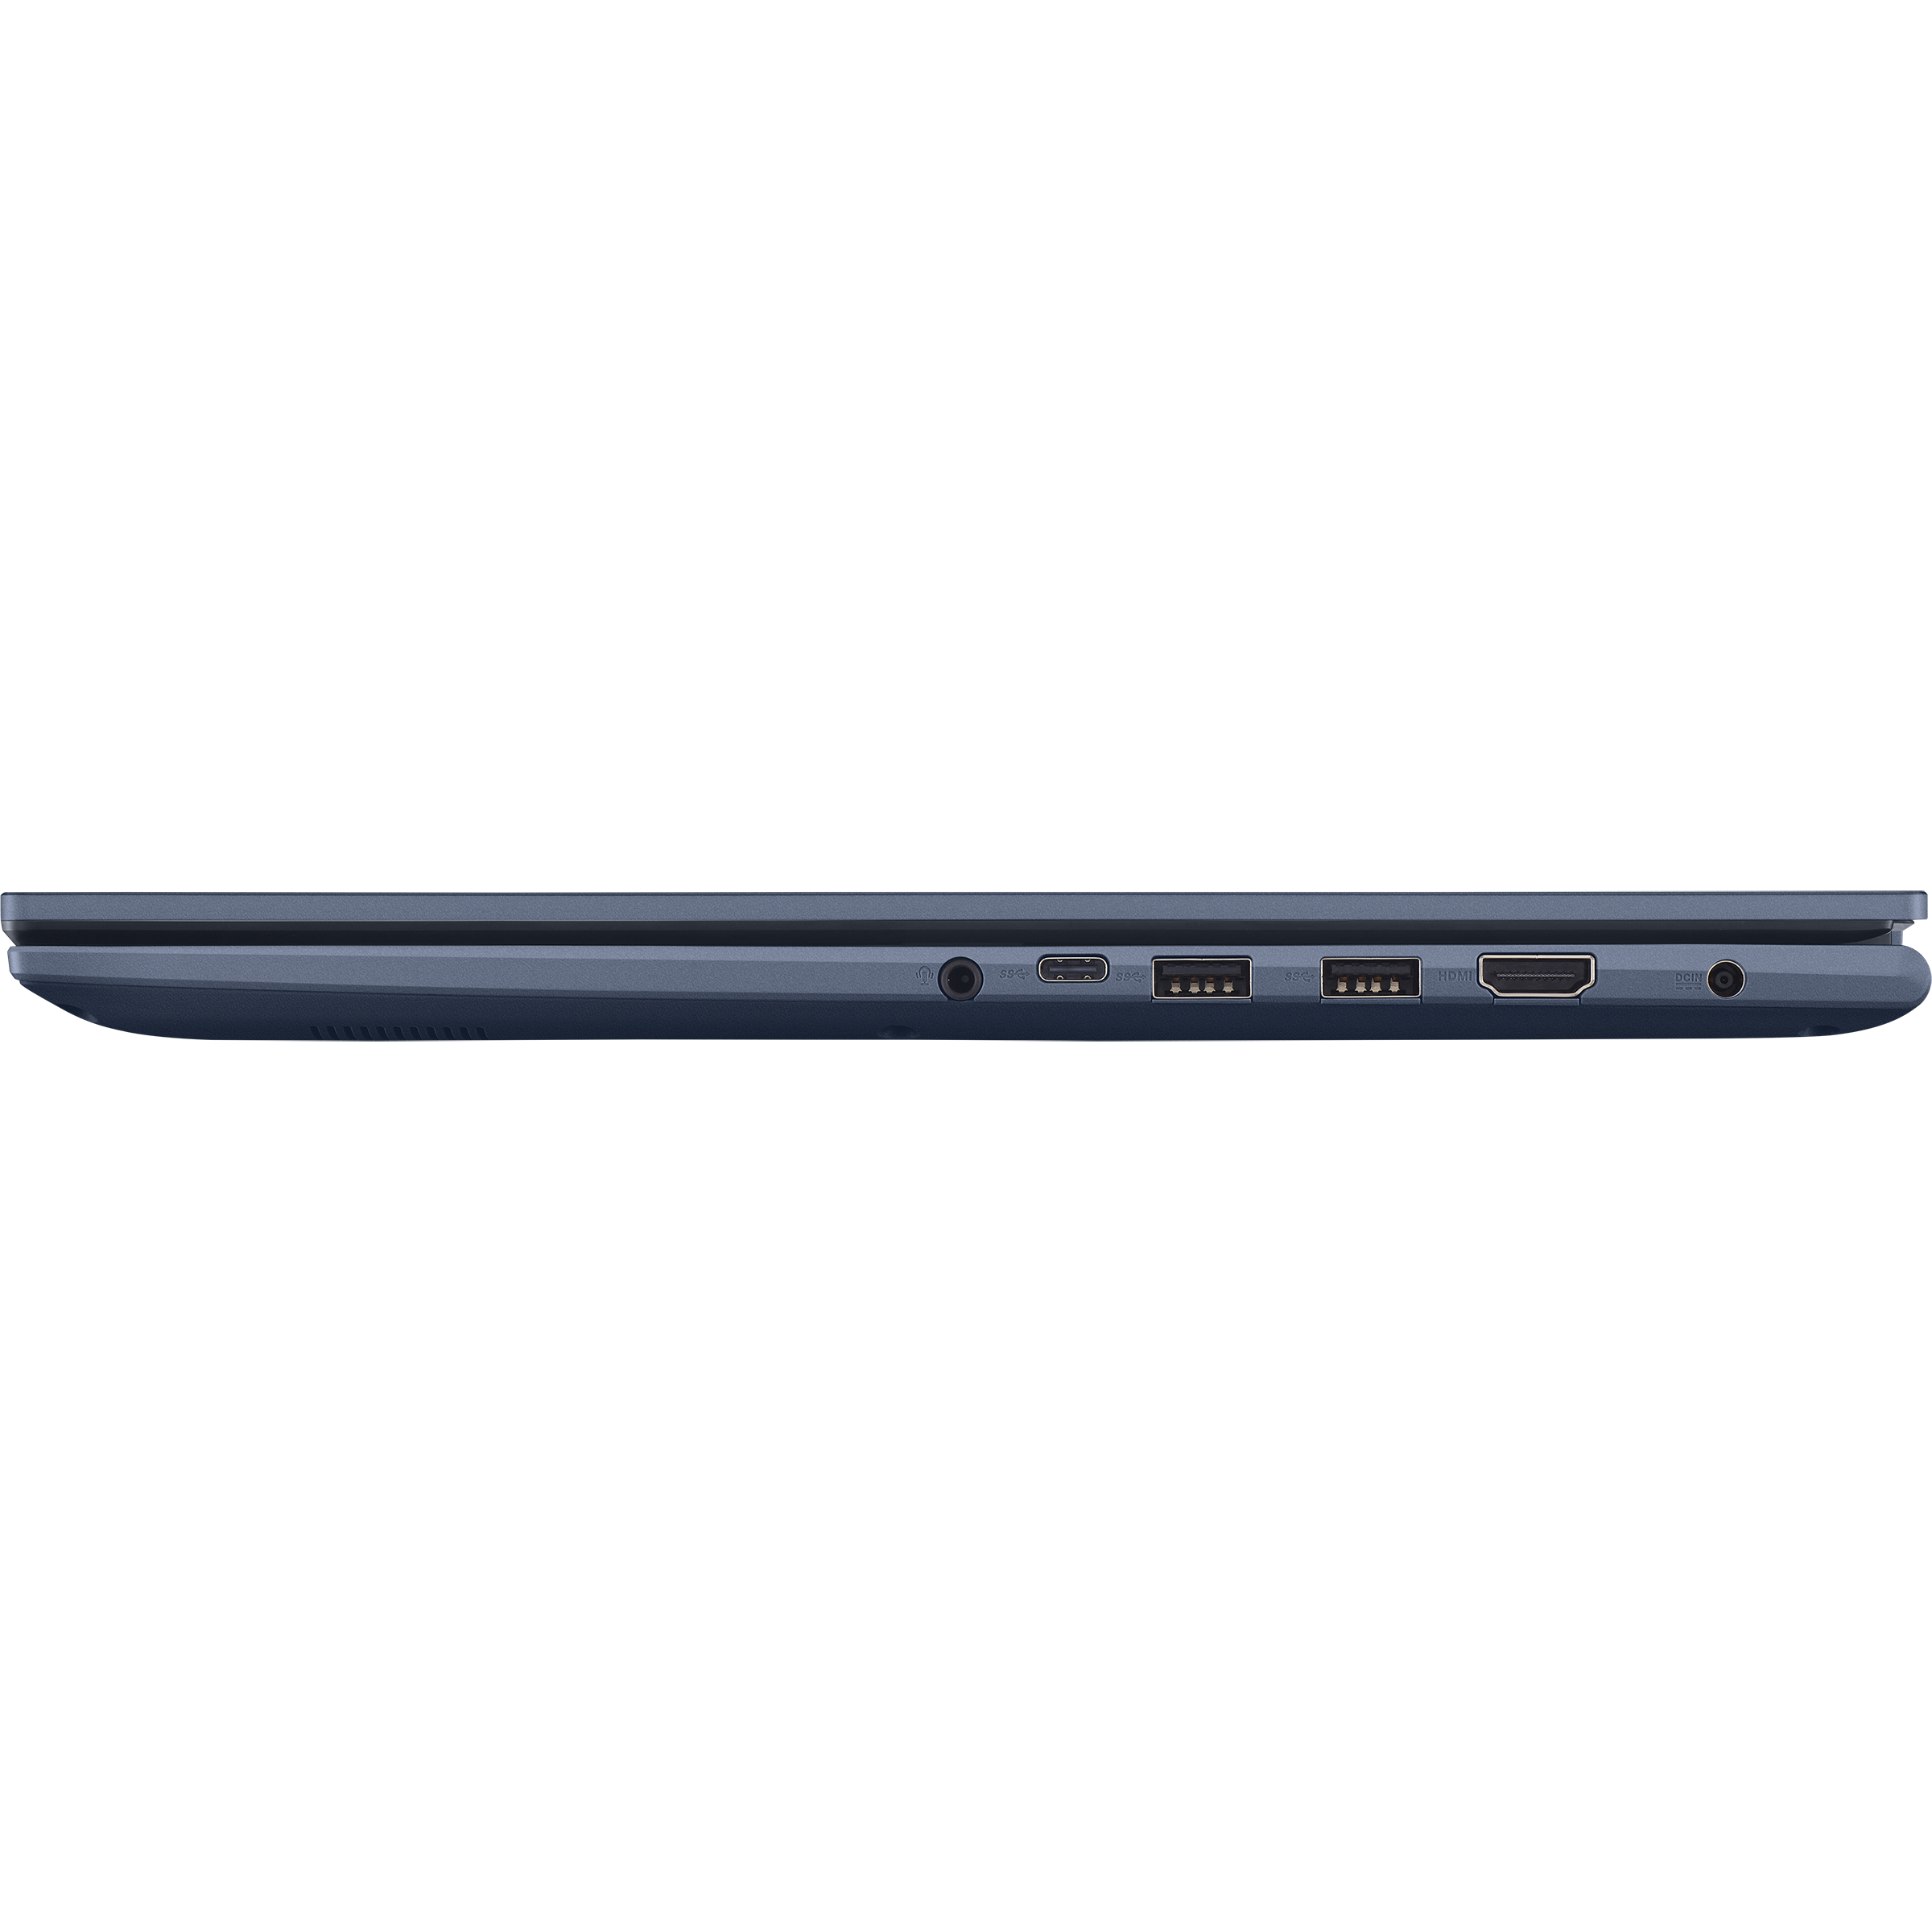 Vivobook 17 (M1702, AMD Ryzen 5000 series)｜Laptops For Home｜ASUS Global